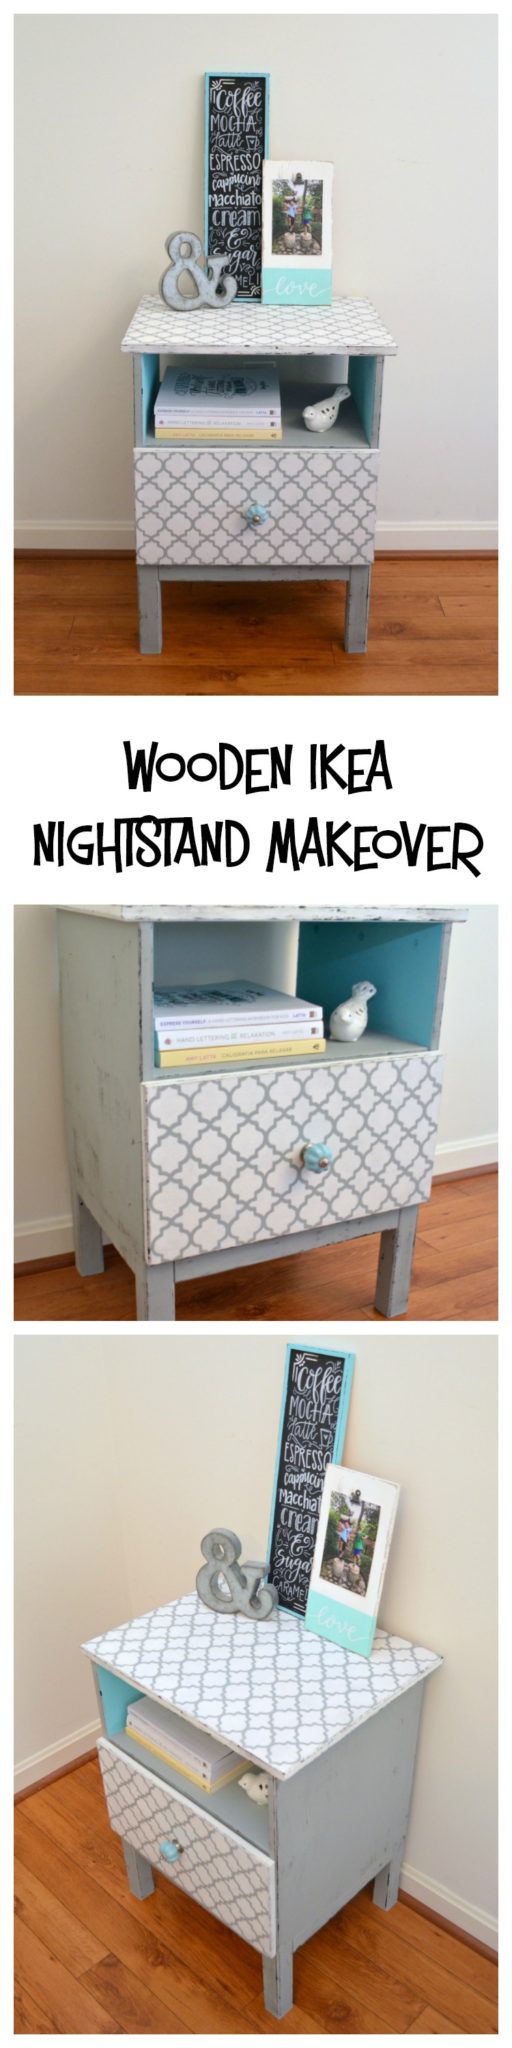 Wooden IKEA Nightstand Makeover